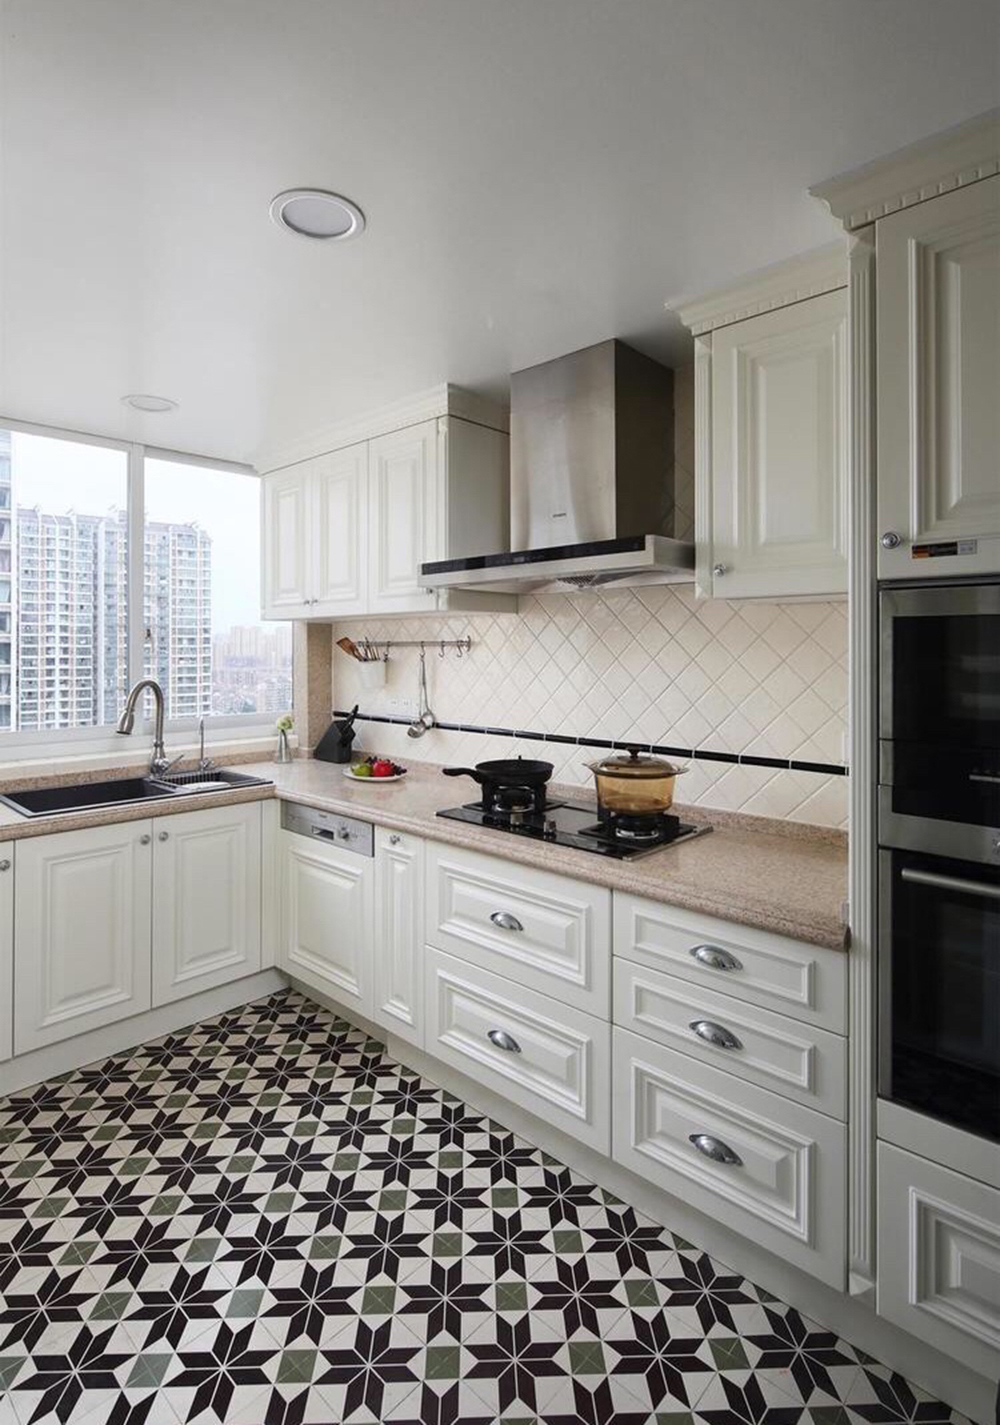 厨房采用白色为基调,白色橱柜搭配黑白花砖,呈现出这个简约而不简单的